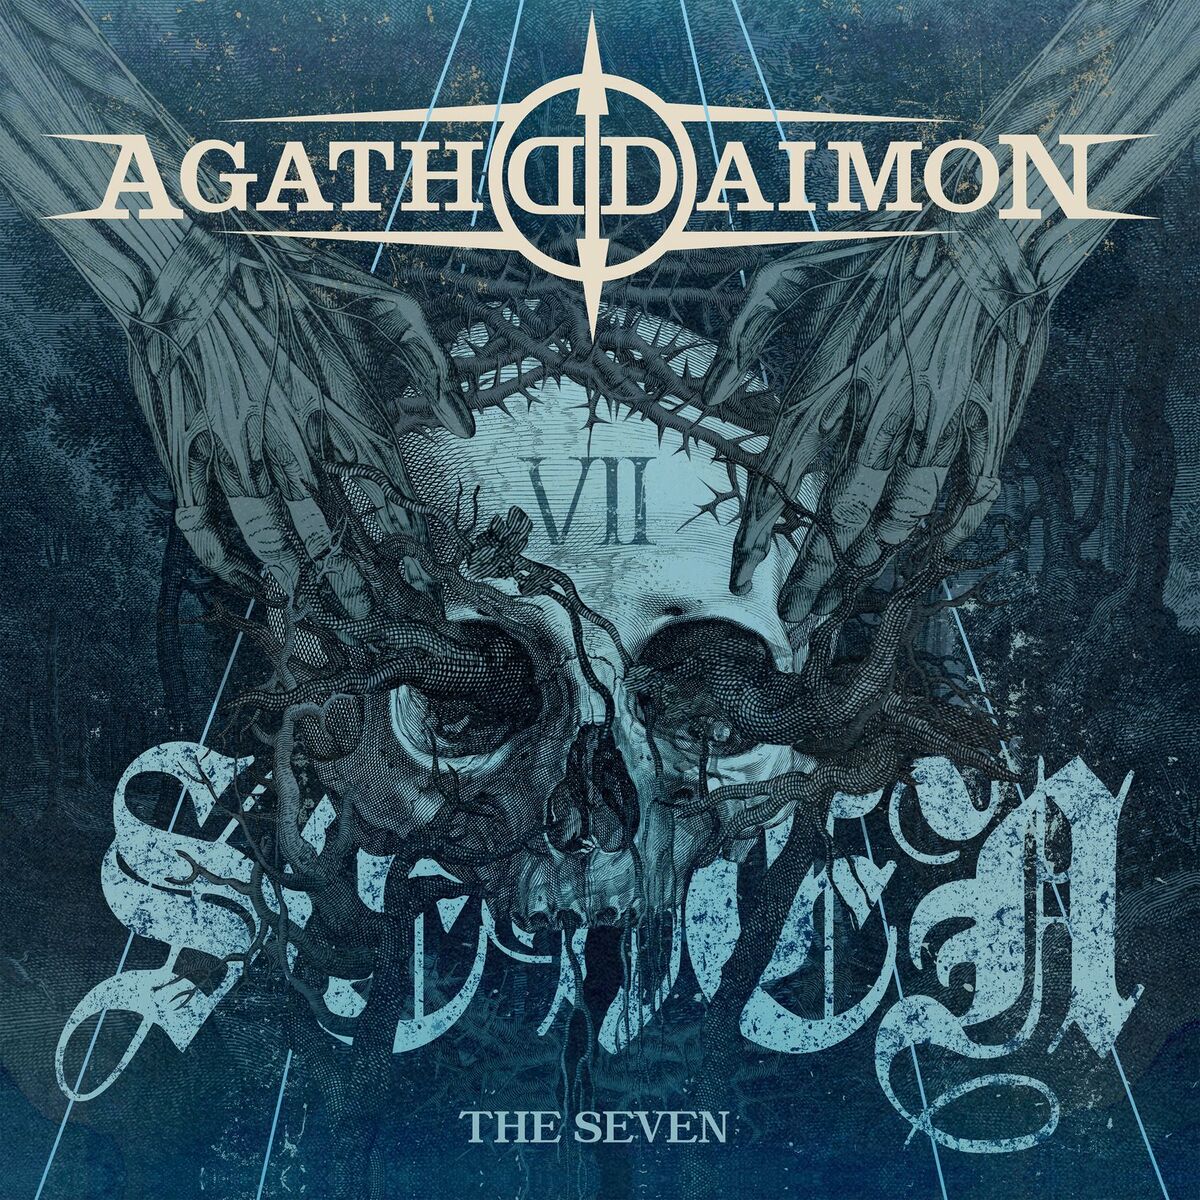 [Review] Agathodaimon vuelven más renovados y oscuros que nunca con “The Seven”, nuevo disco tras 8 años de letargo.